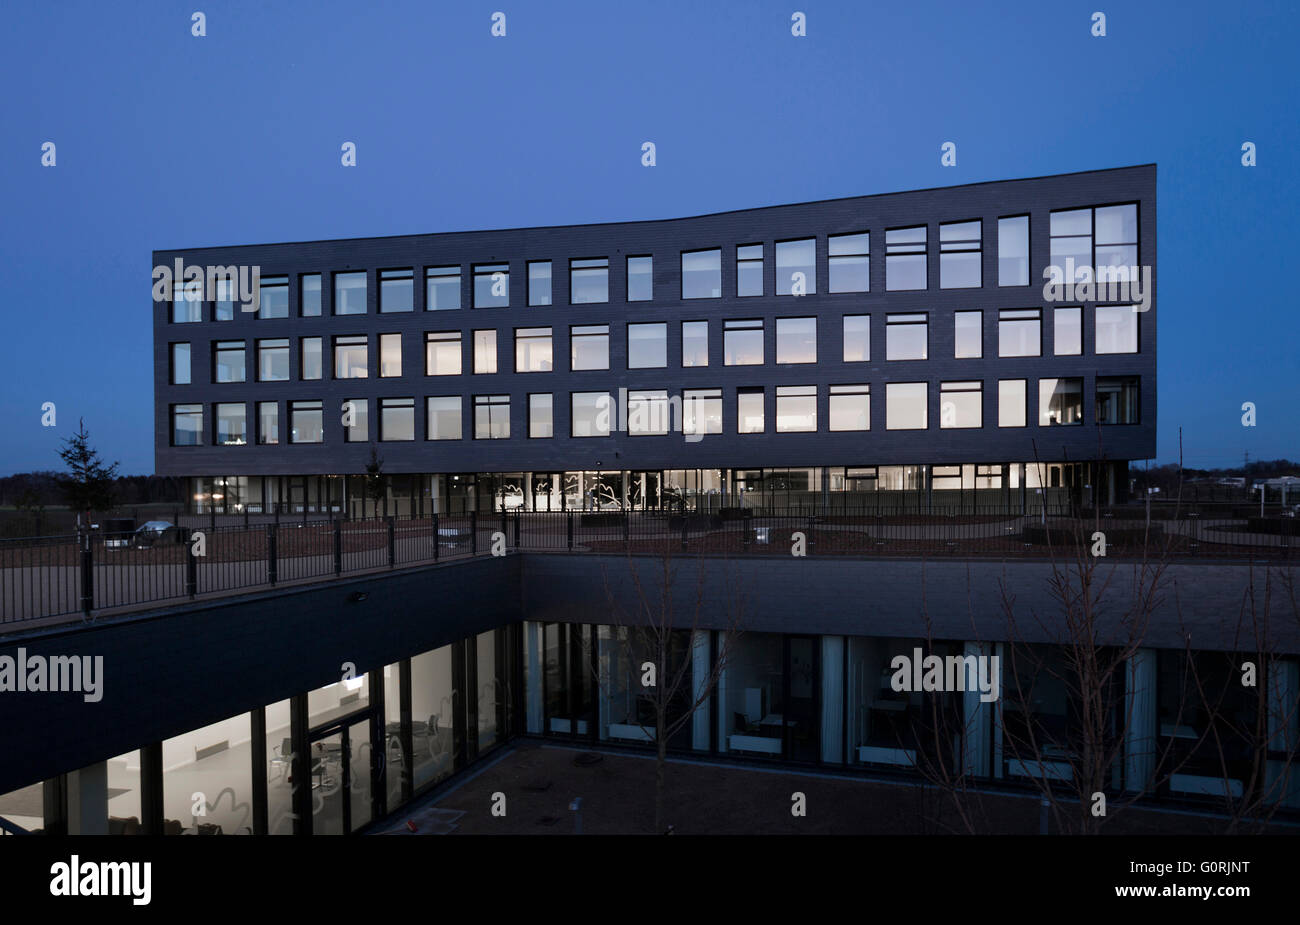 Rathaus und Gesundheitszentrum, Egedal, Dänemark. Außenansicht des Gebäudes in der Nacht. Niedriger Stufe Büros im Blick. Stockfoto